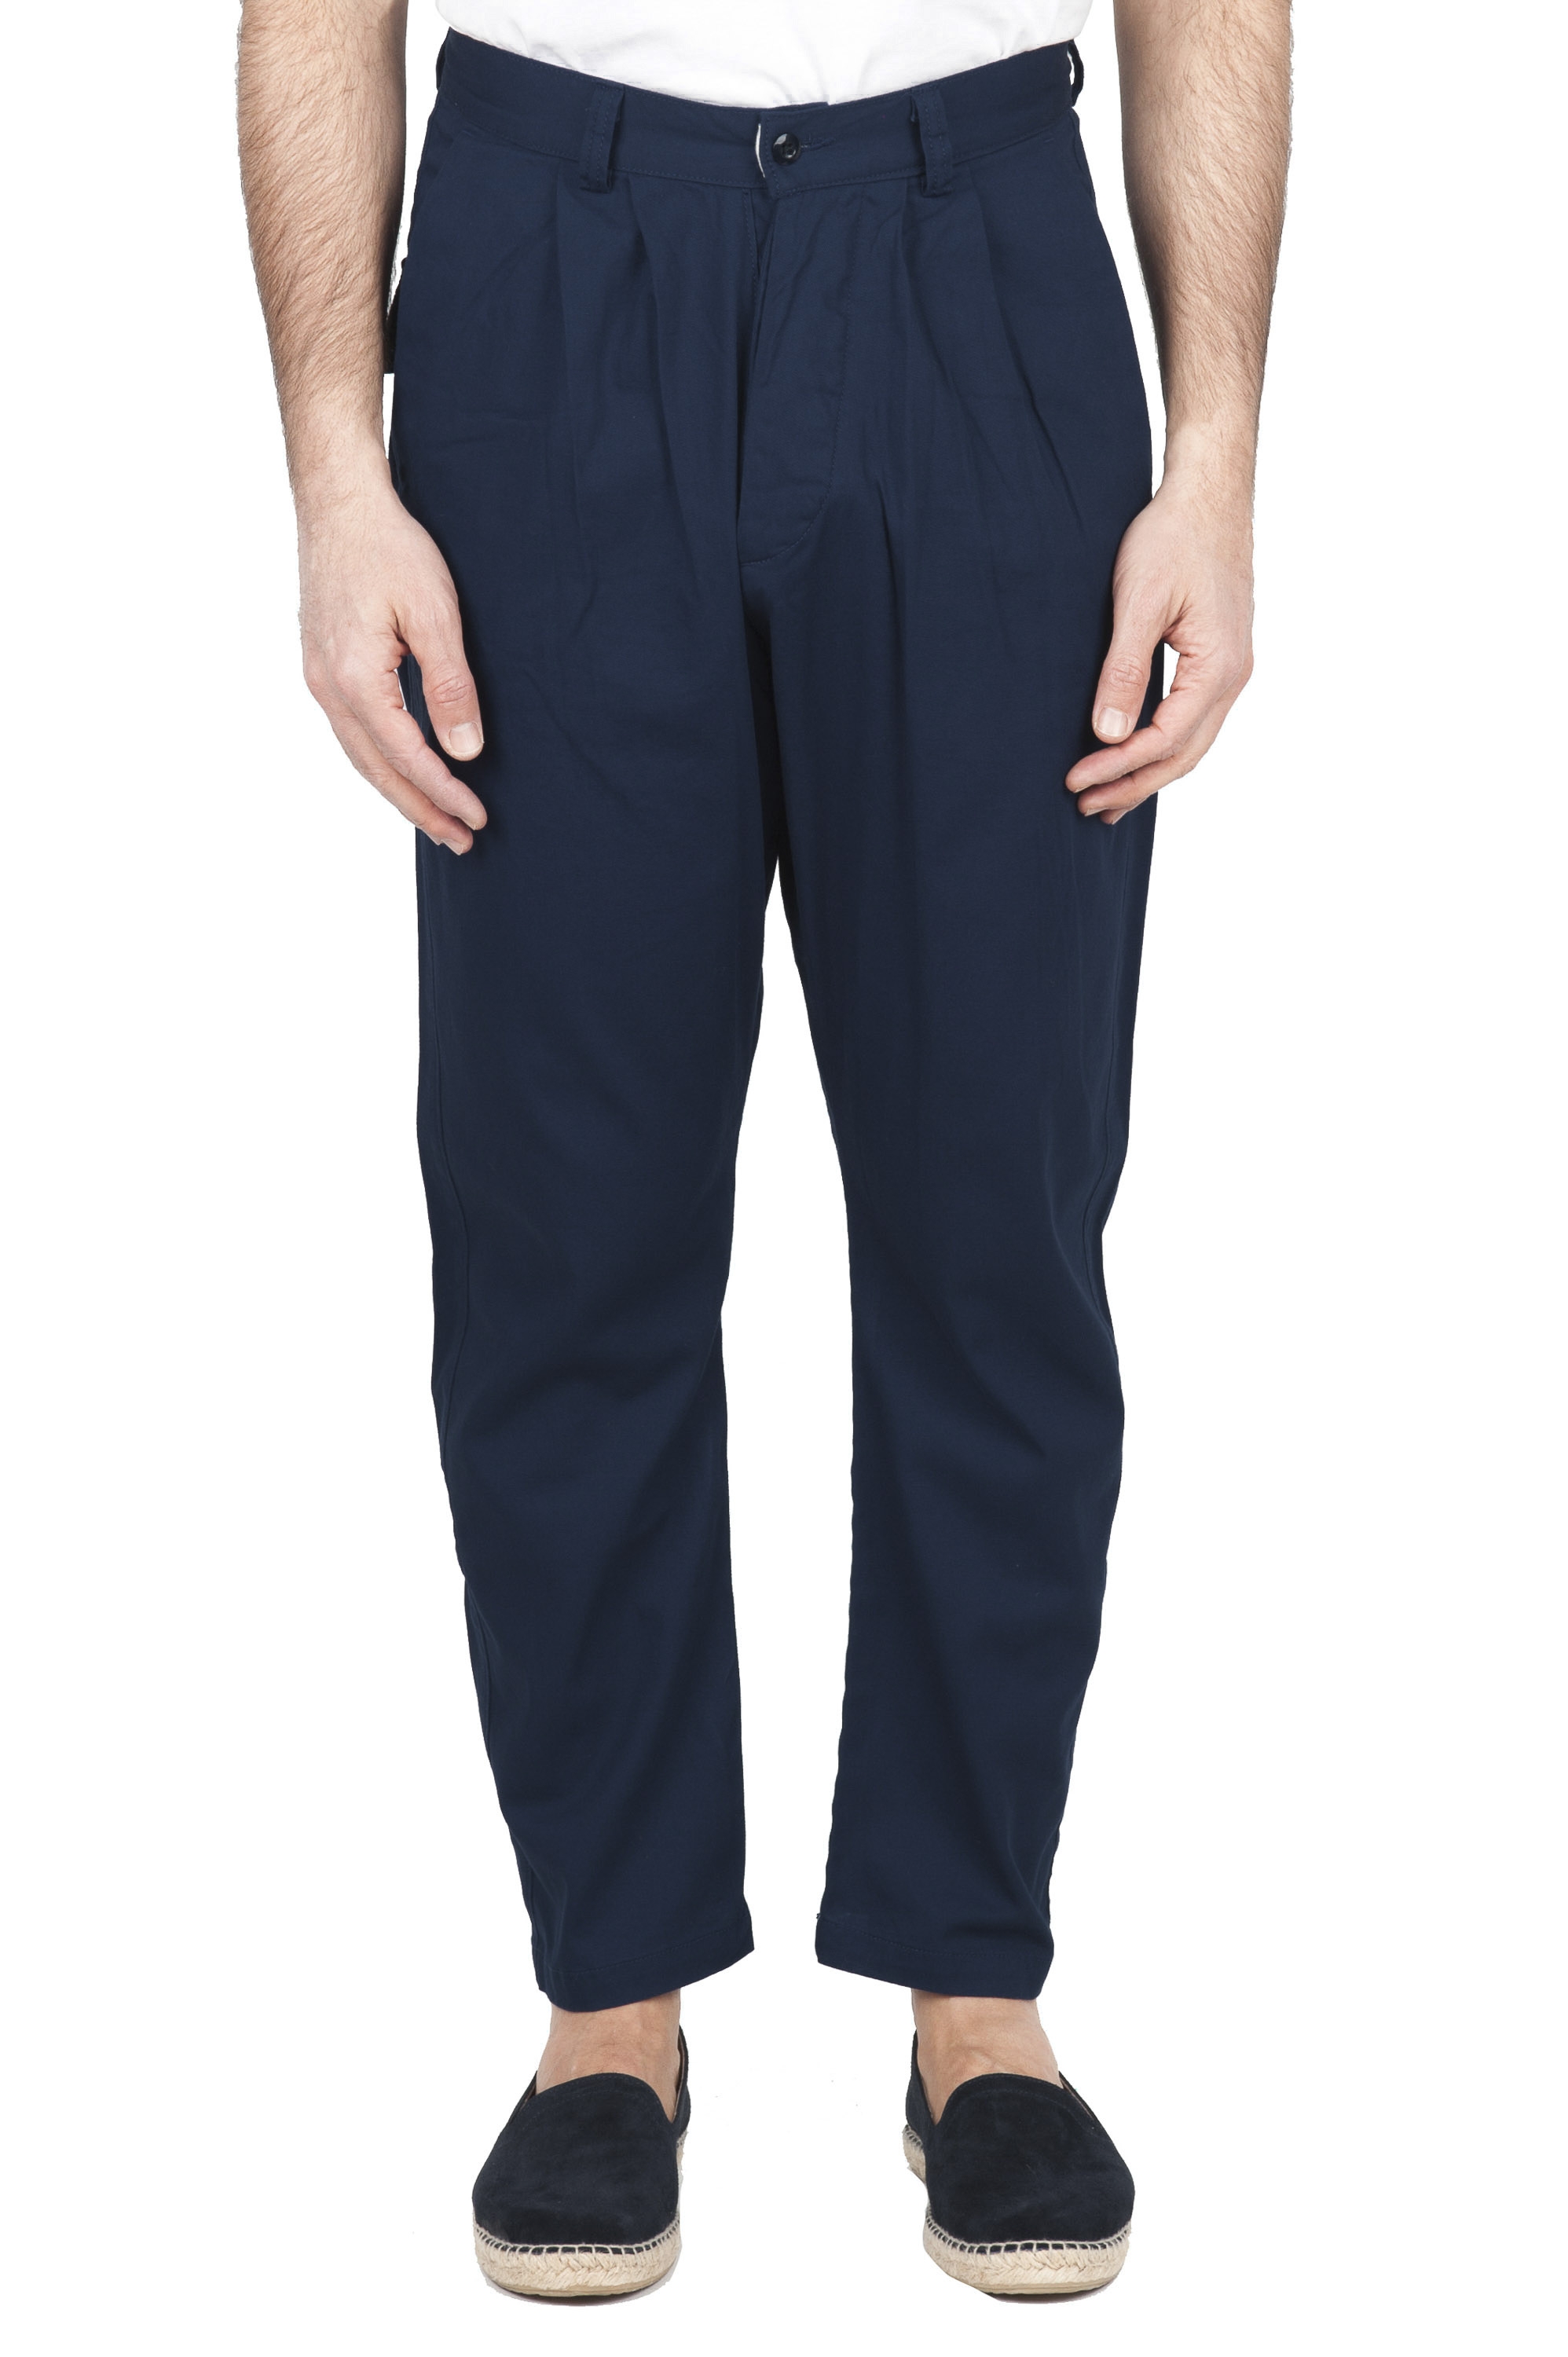 SBU 01686 Pantalón japonés de dos pinzas en algodón azul marino 01